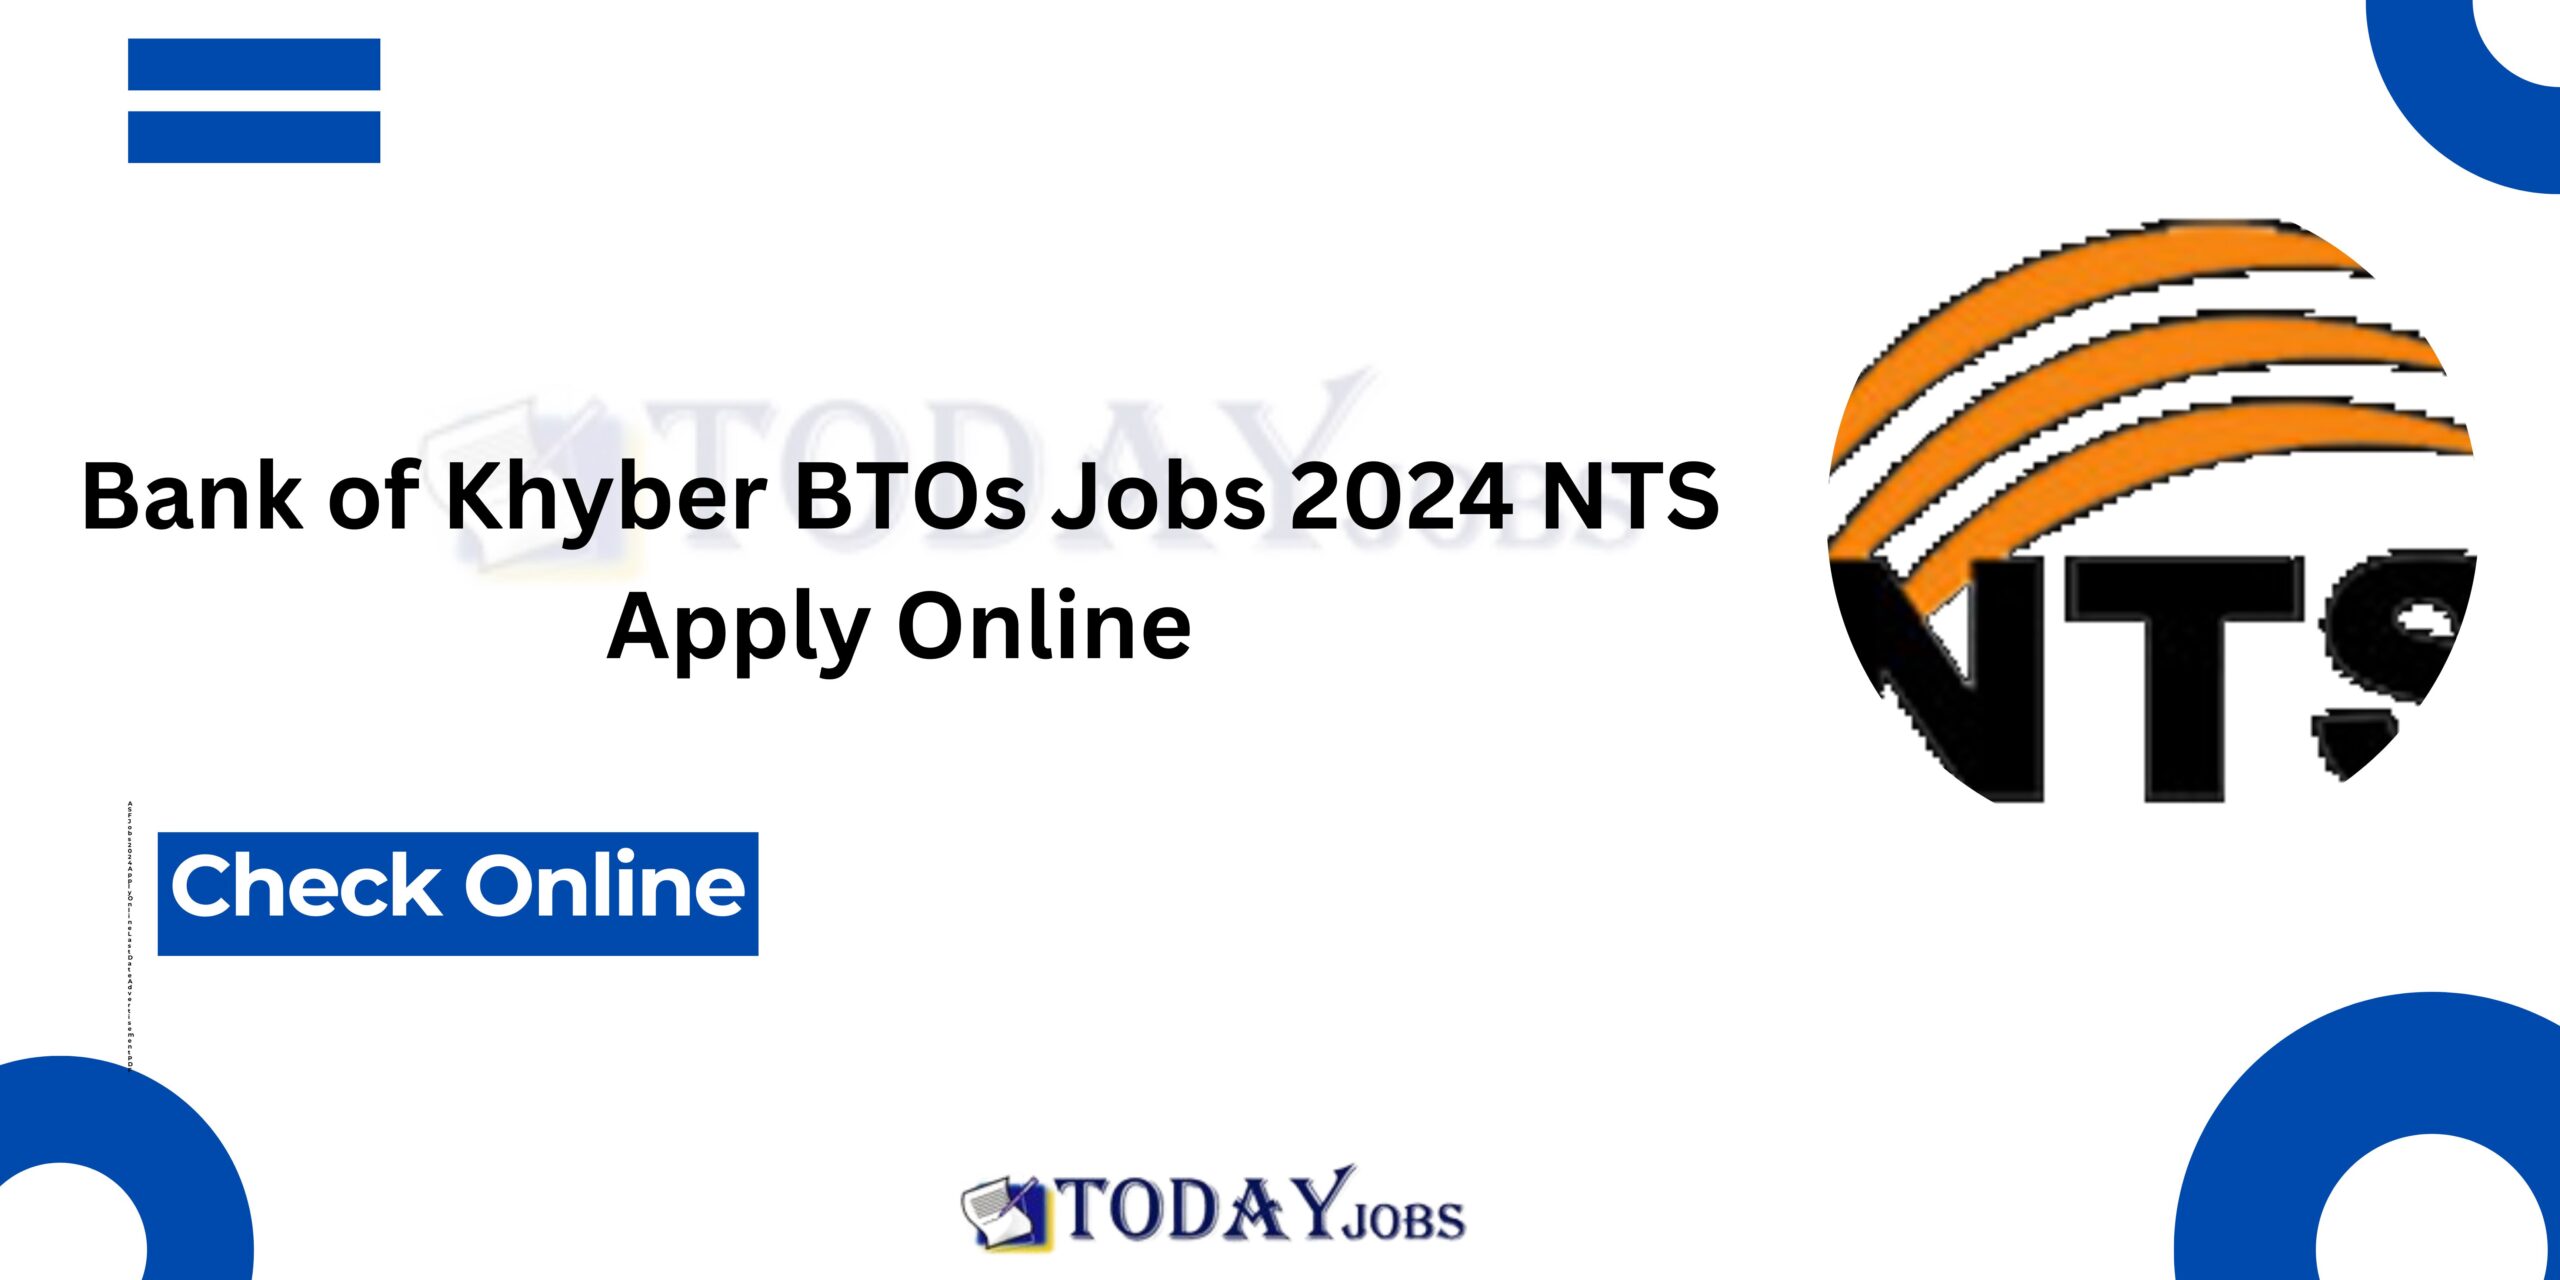 Bank of Khyber BTOs Jobs 2024 NTS Apply Online